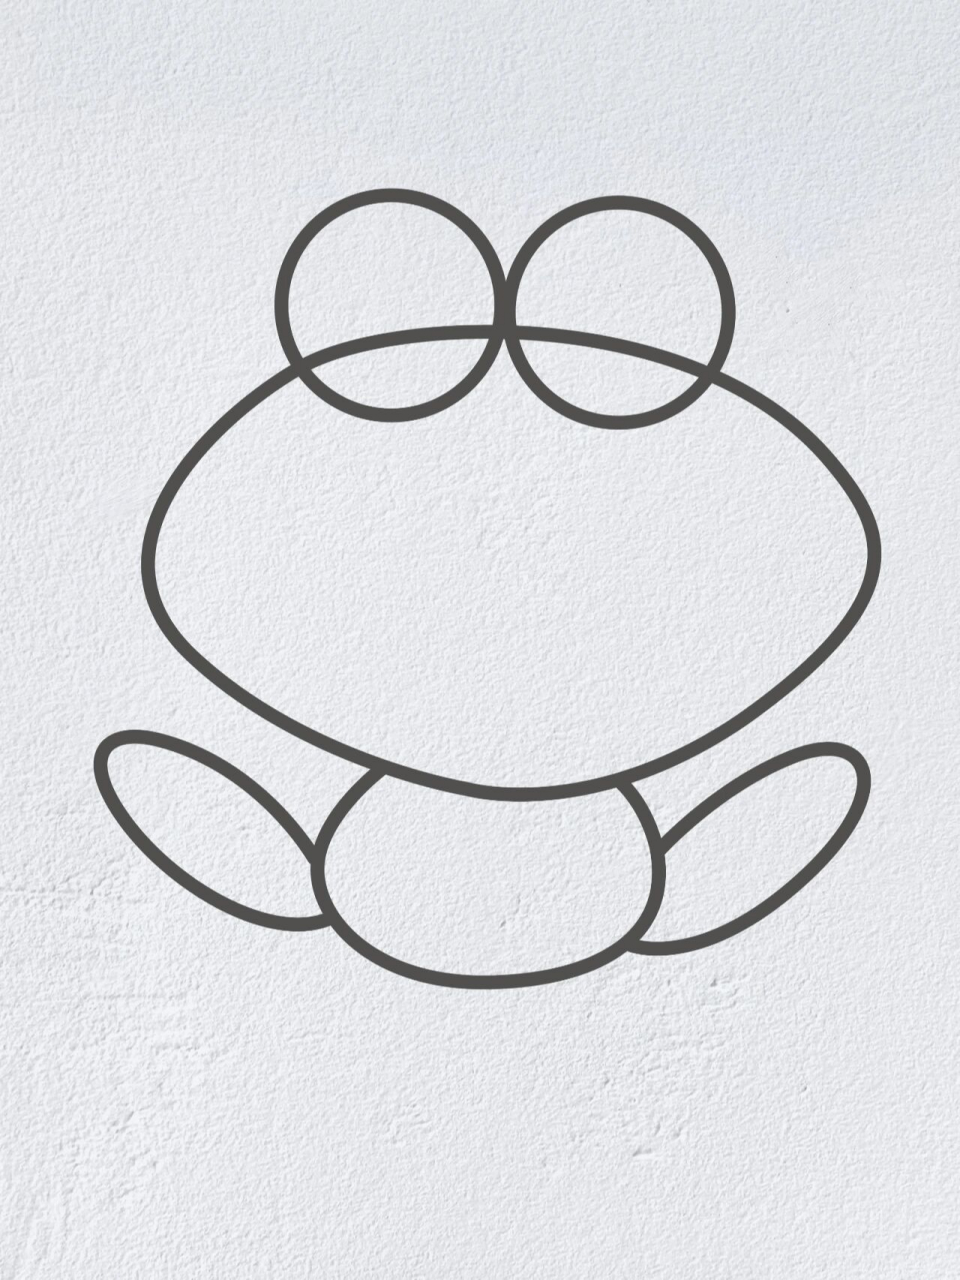 画一只小青蛙怎么画图片